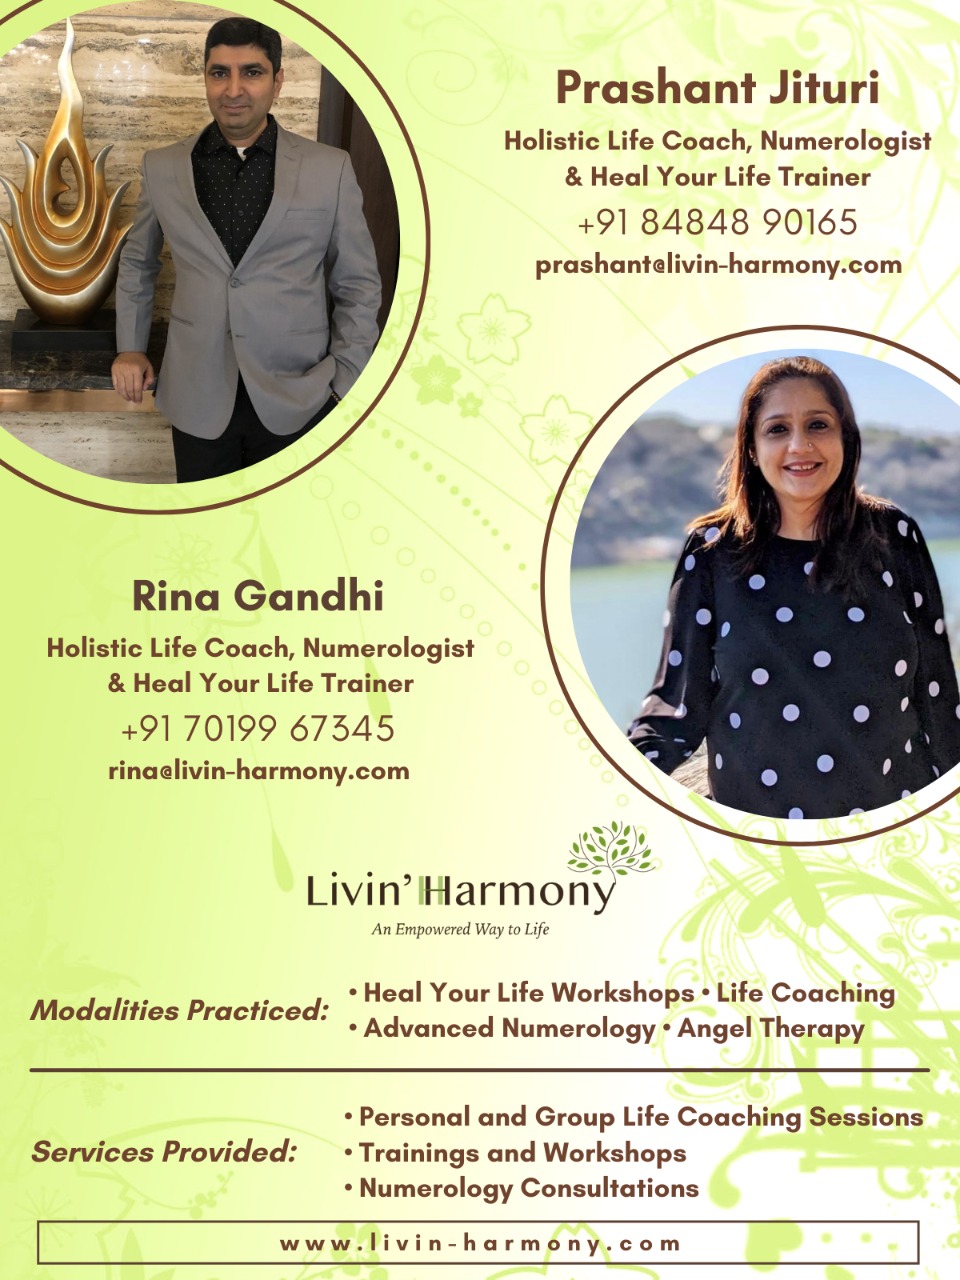 Life Coaching by Rina Gandhi and Prashant Jituri - Visakhapatnam